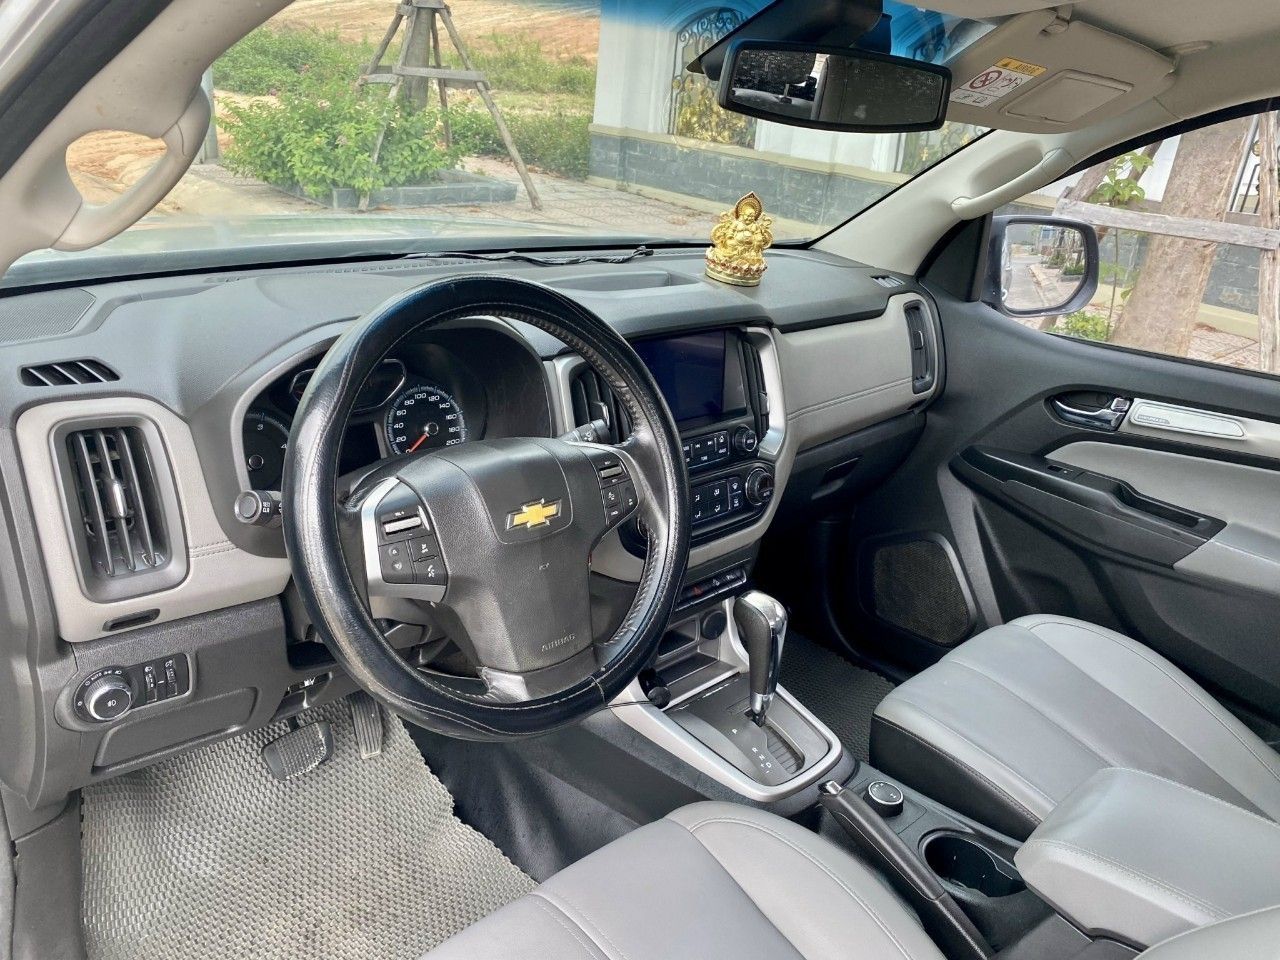 Chevrolet Colorado 2018 - 2 cầu số tự động, máy dầu, biển 88 siêu chất